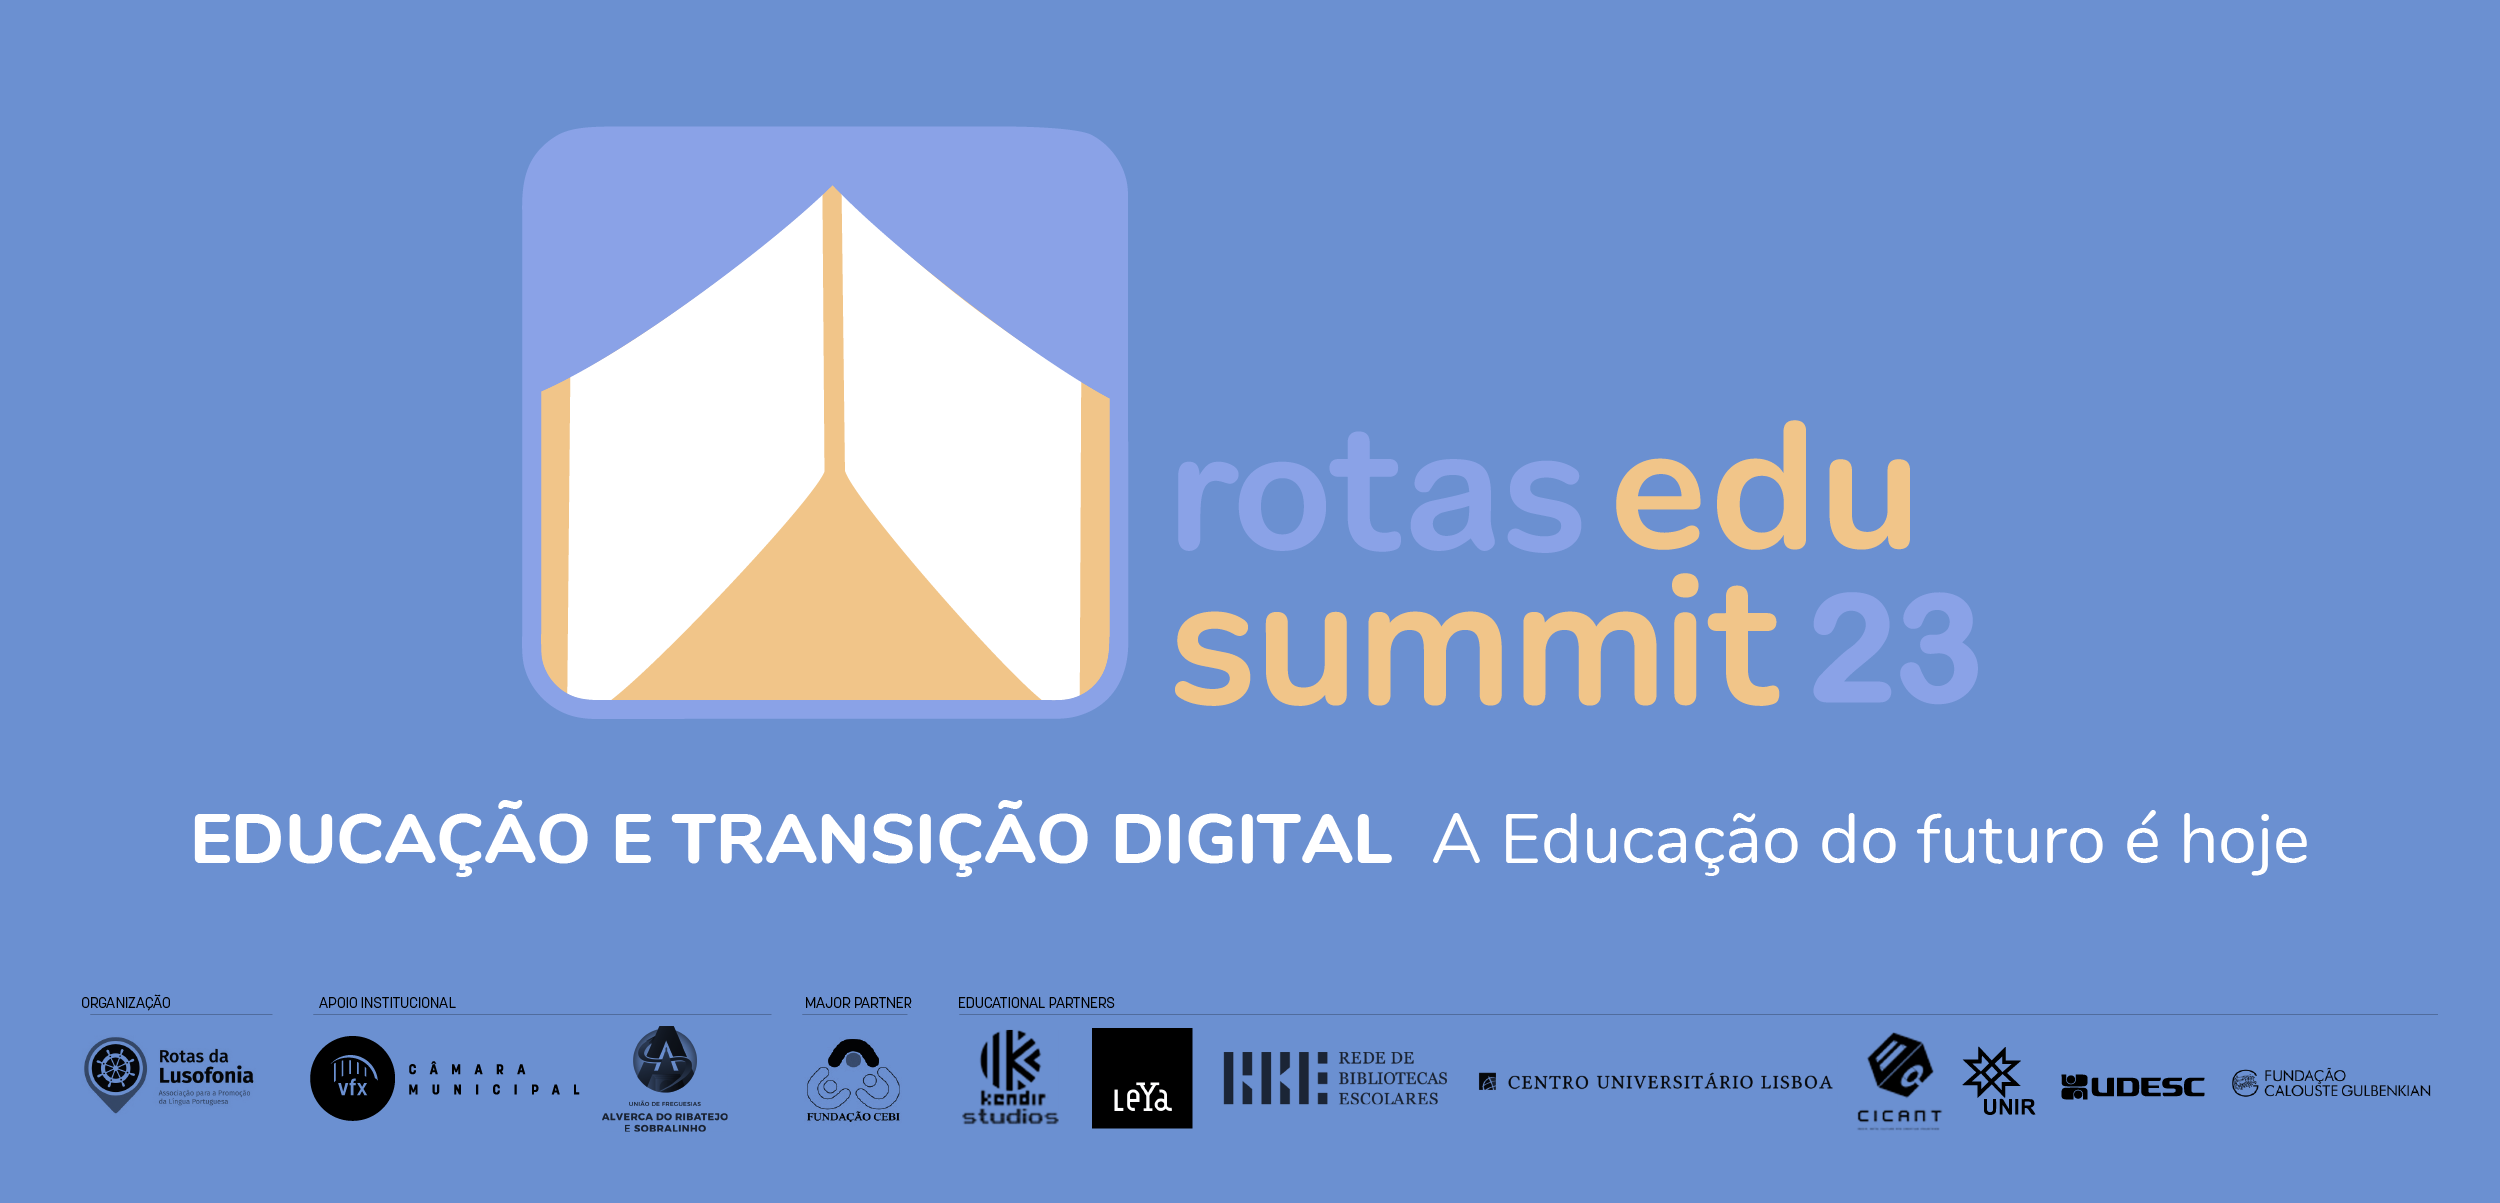 Educação e tecnologia são a base da conferência internacional “rotas edu summit 23”